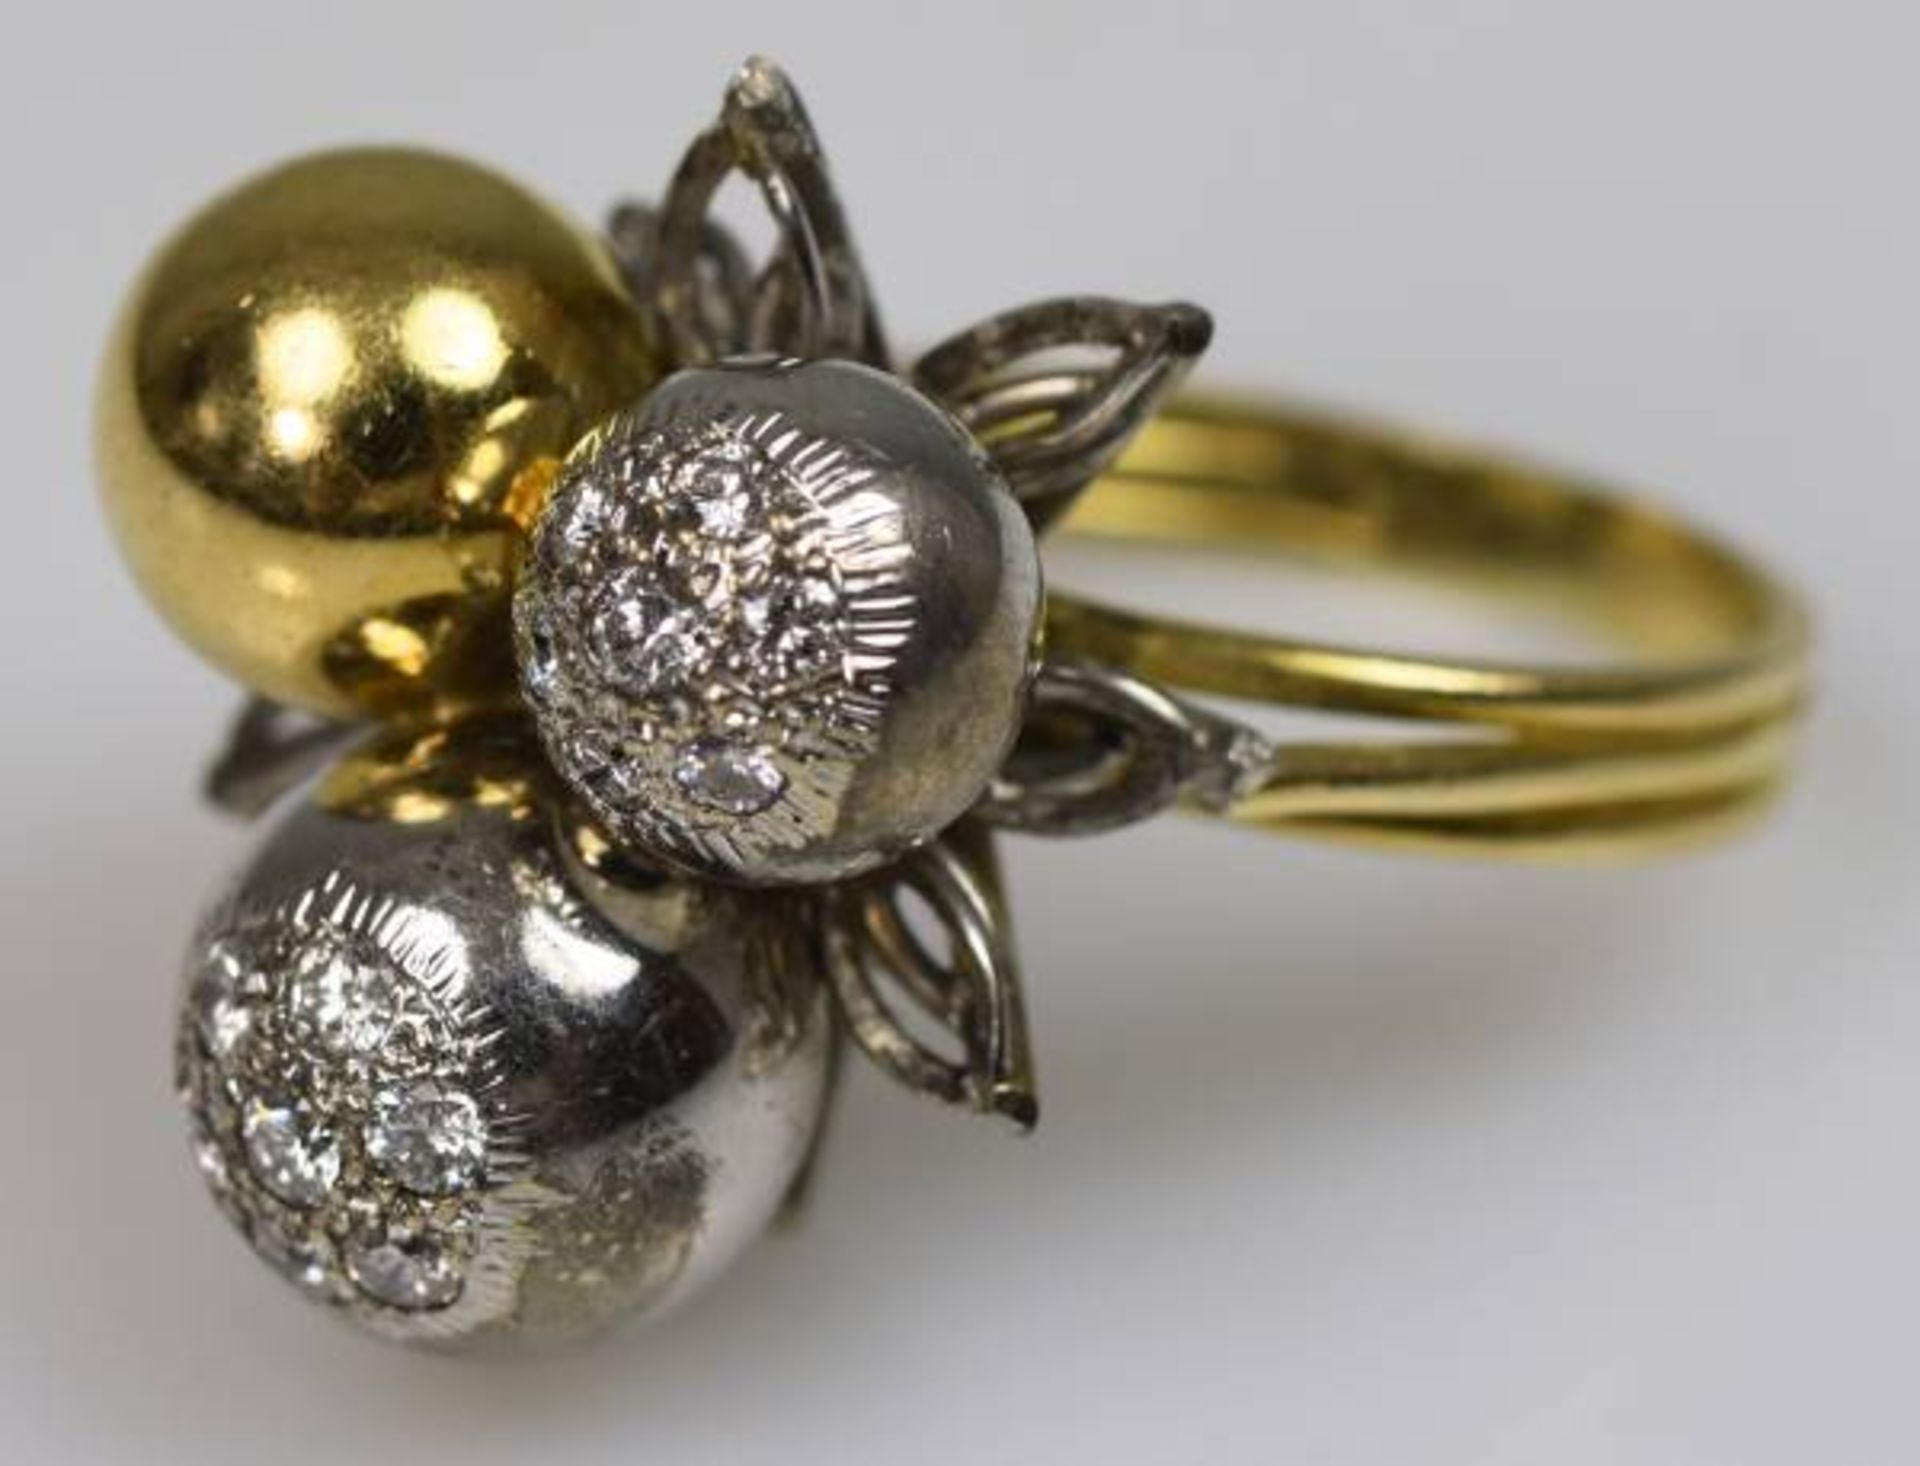 MODERNER RING bicolor, Schauseite besetzt mit Goldkugeln, seitlich zwei Weißgoldkugeln besetzt